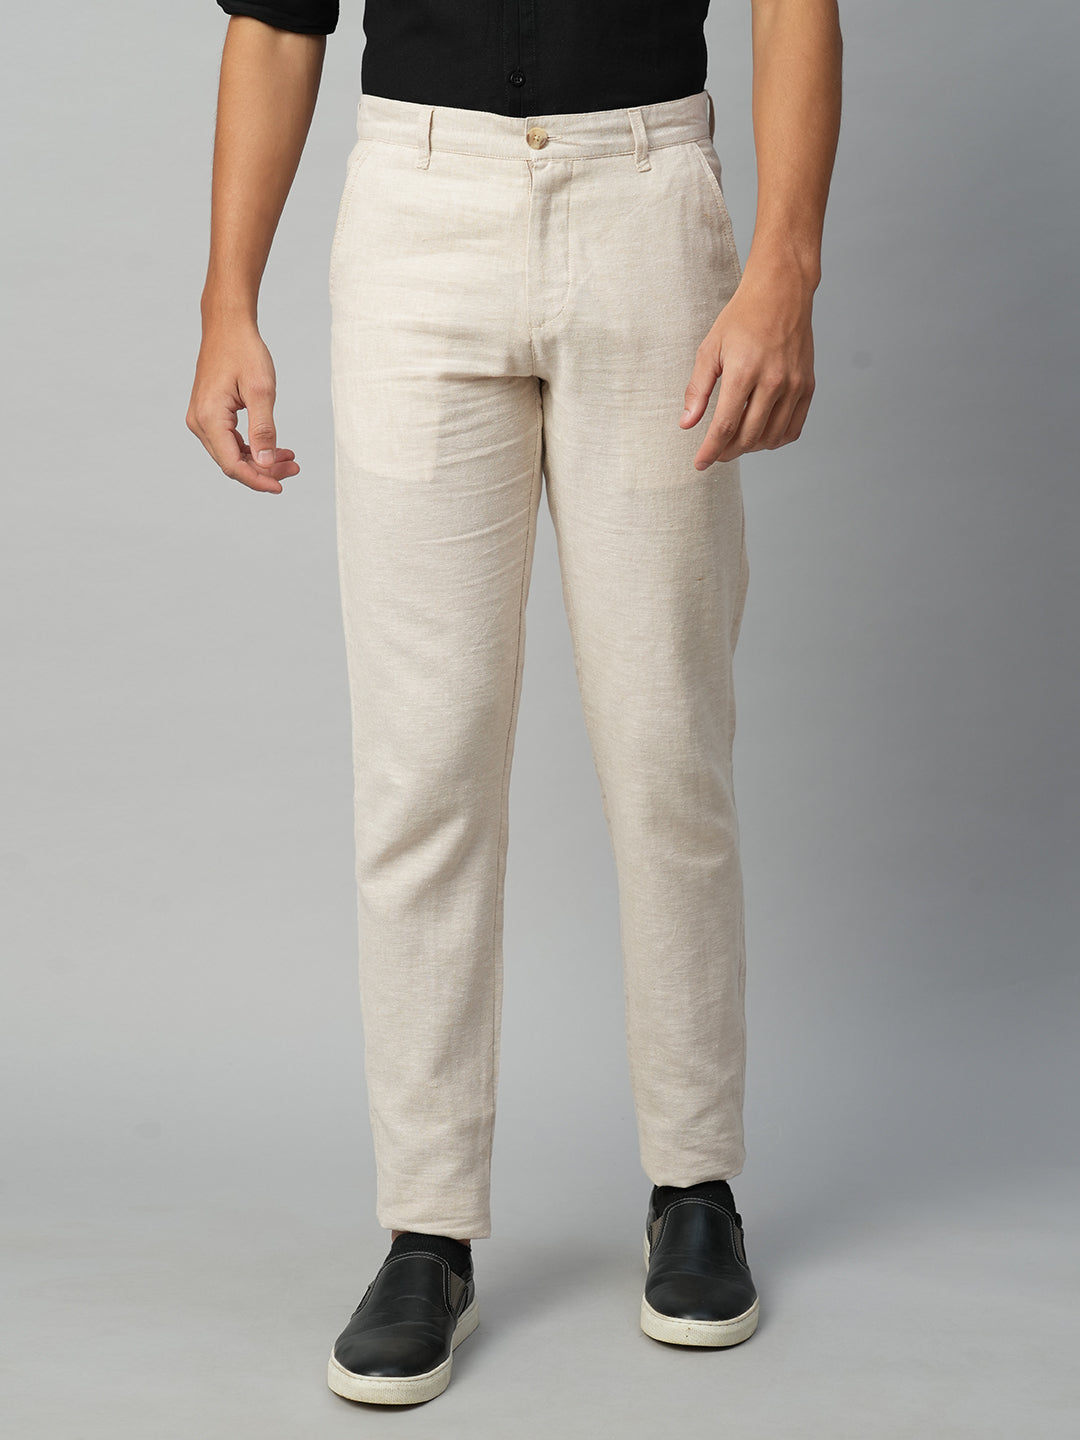 Men's Cotton Linen  Natural Slim Fit Pant